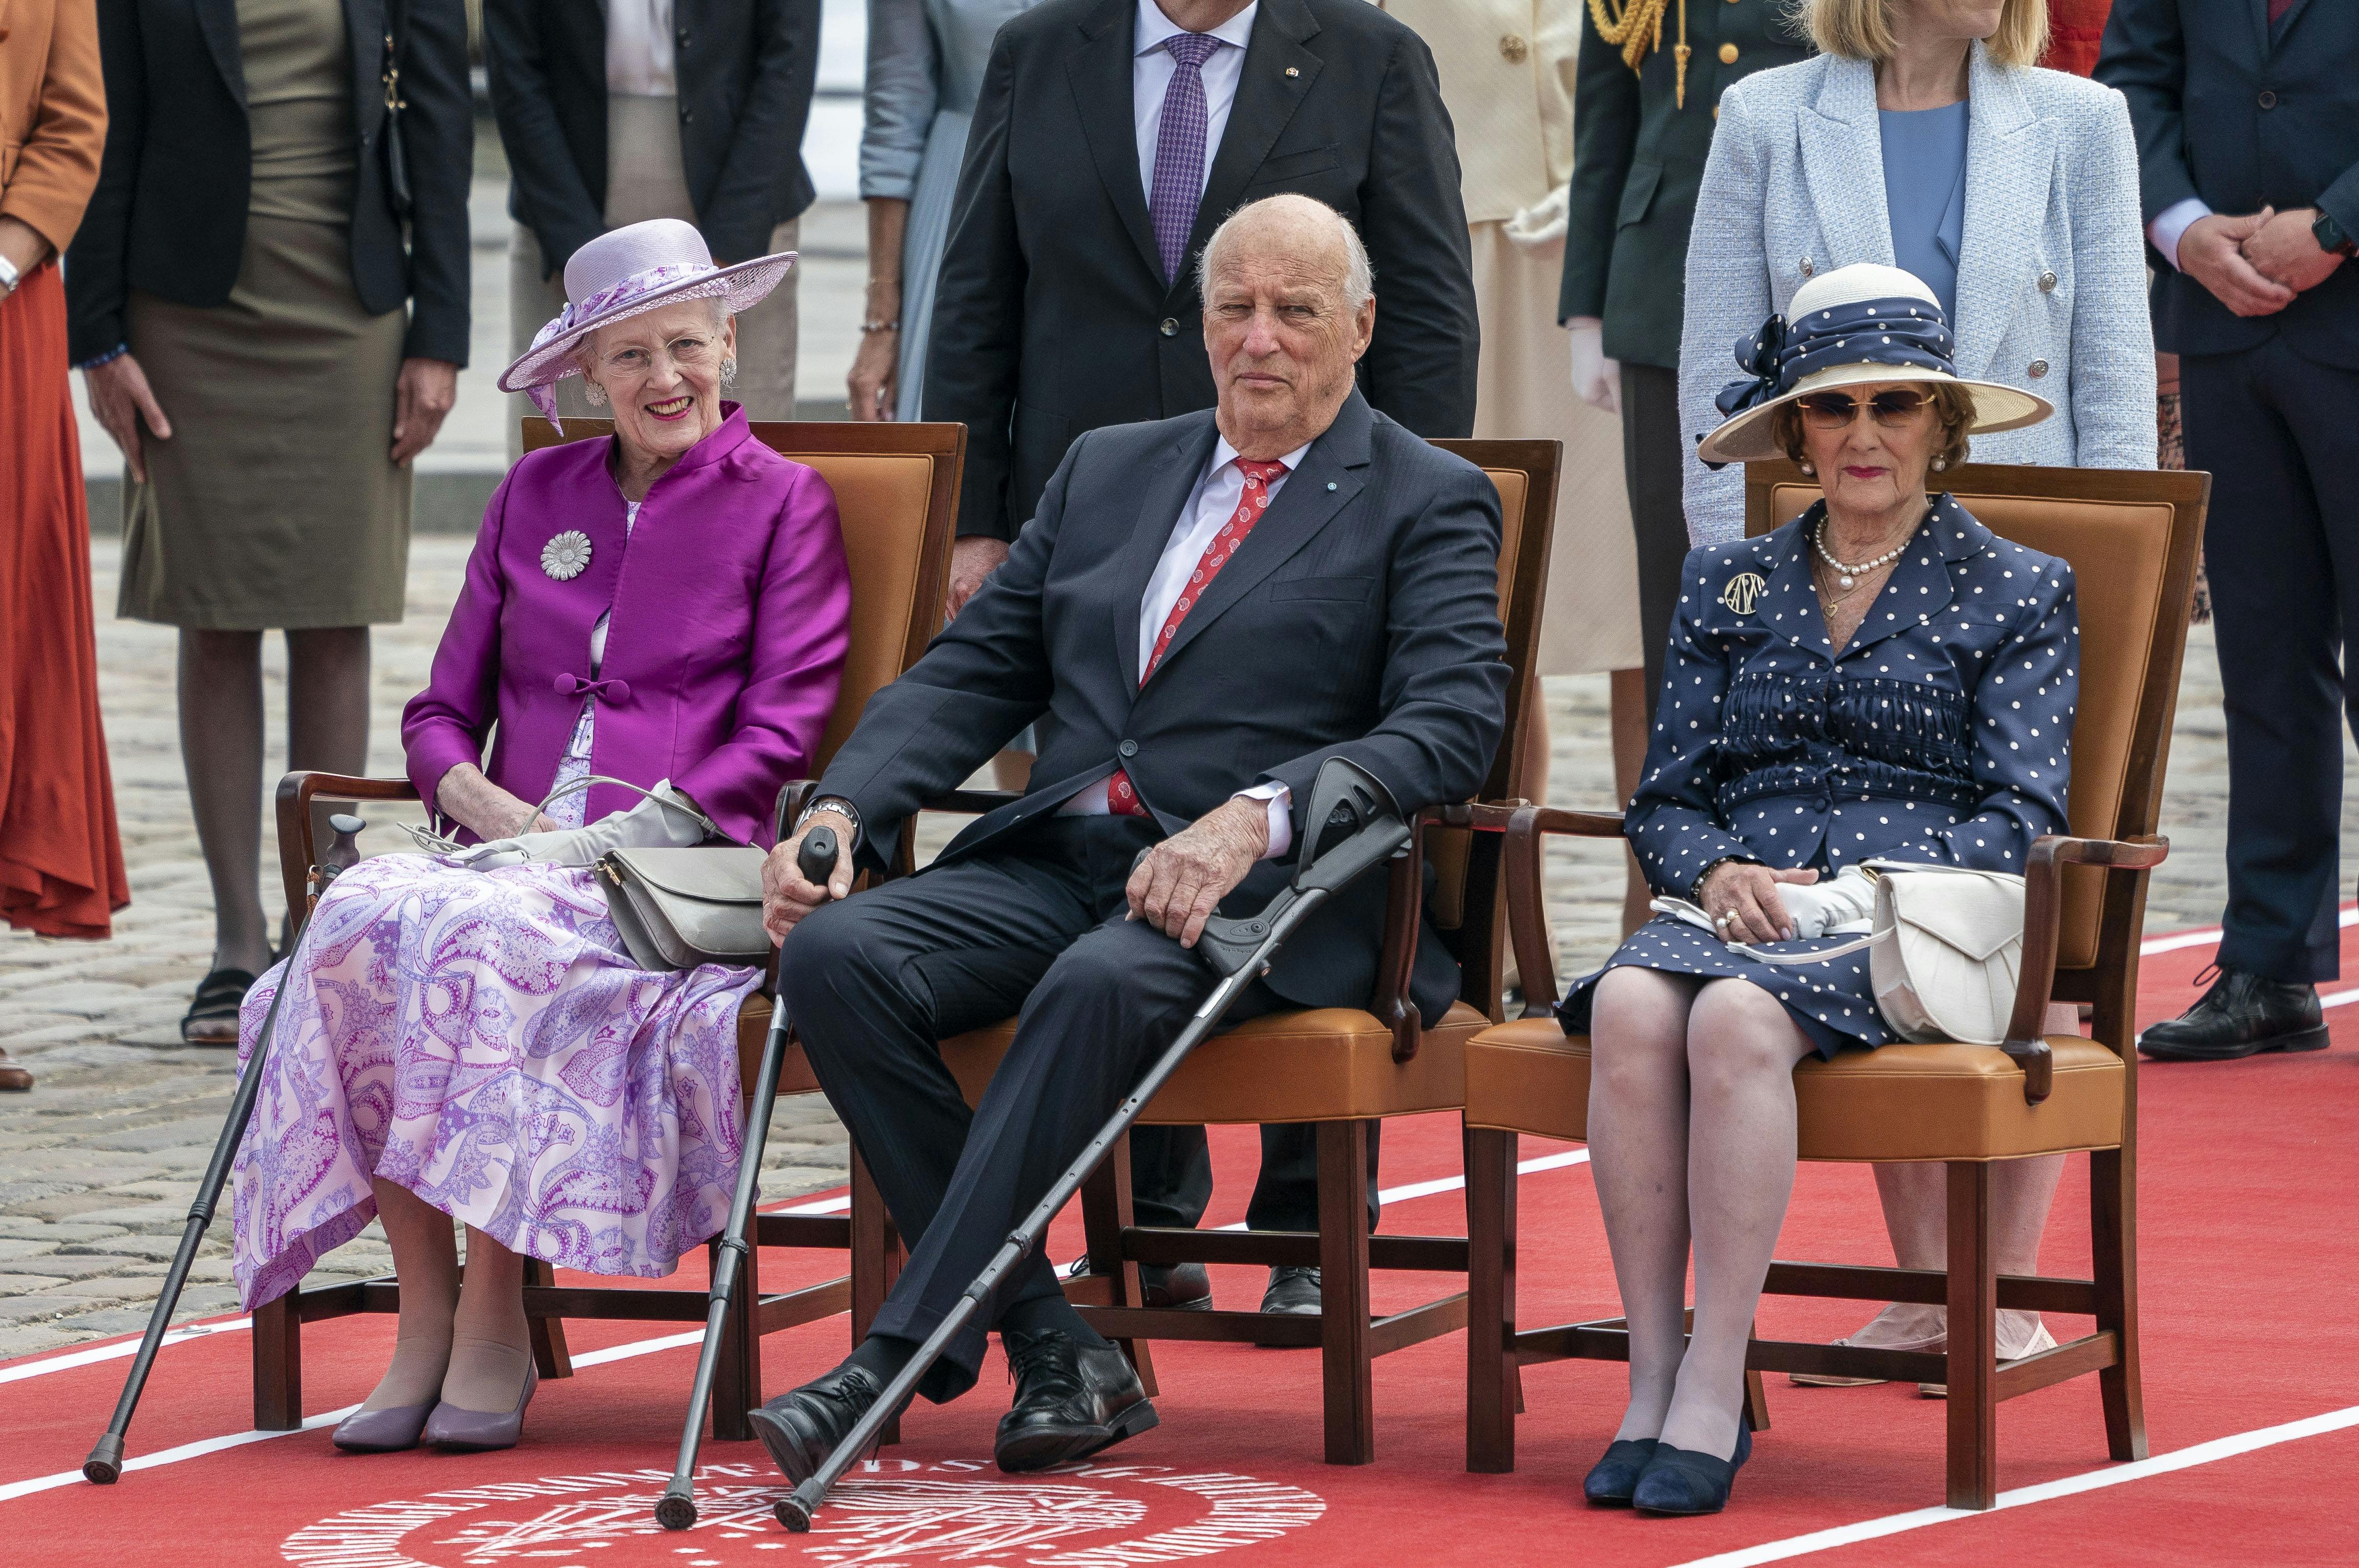 Dronning Margrethe, kong Harald og dronning Sonja. På dronning Sonjas højre skulder ses brochen, der er skabt af Georg Jensen i anledning af dronning Margrethes 50-års regeringsjubilæum.&nbsp;
